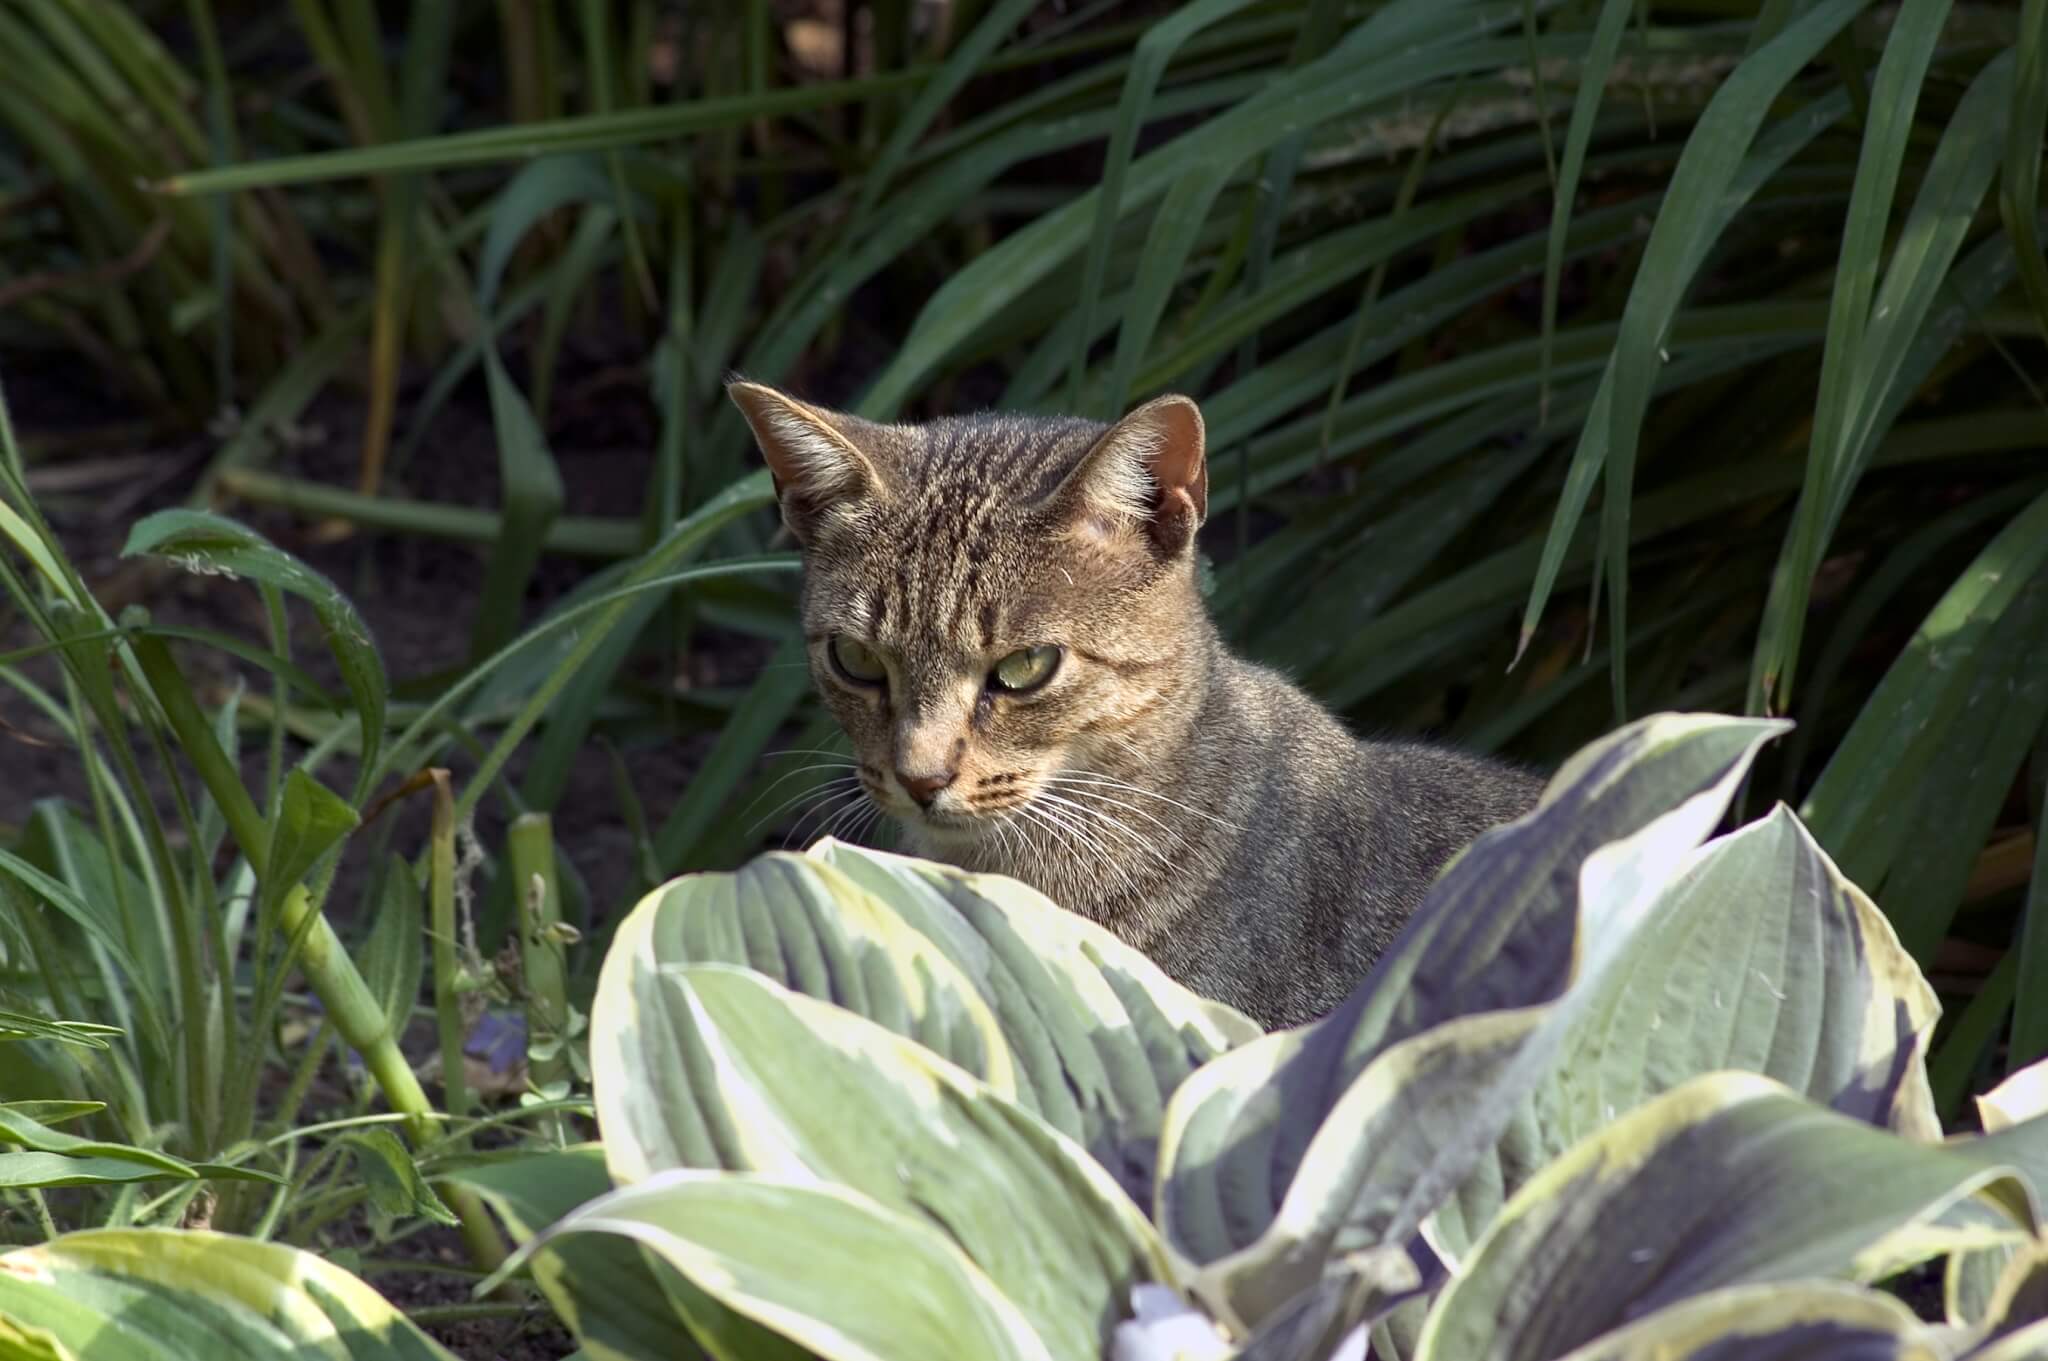 Cat deterrent plant